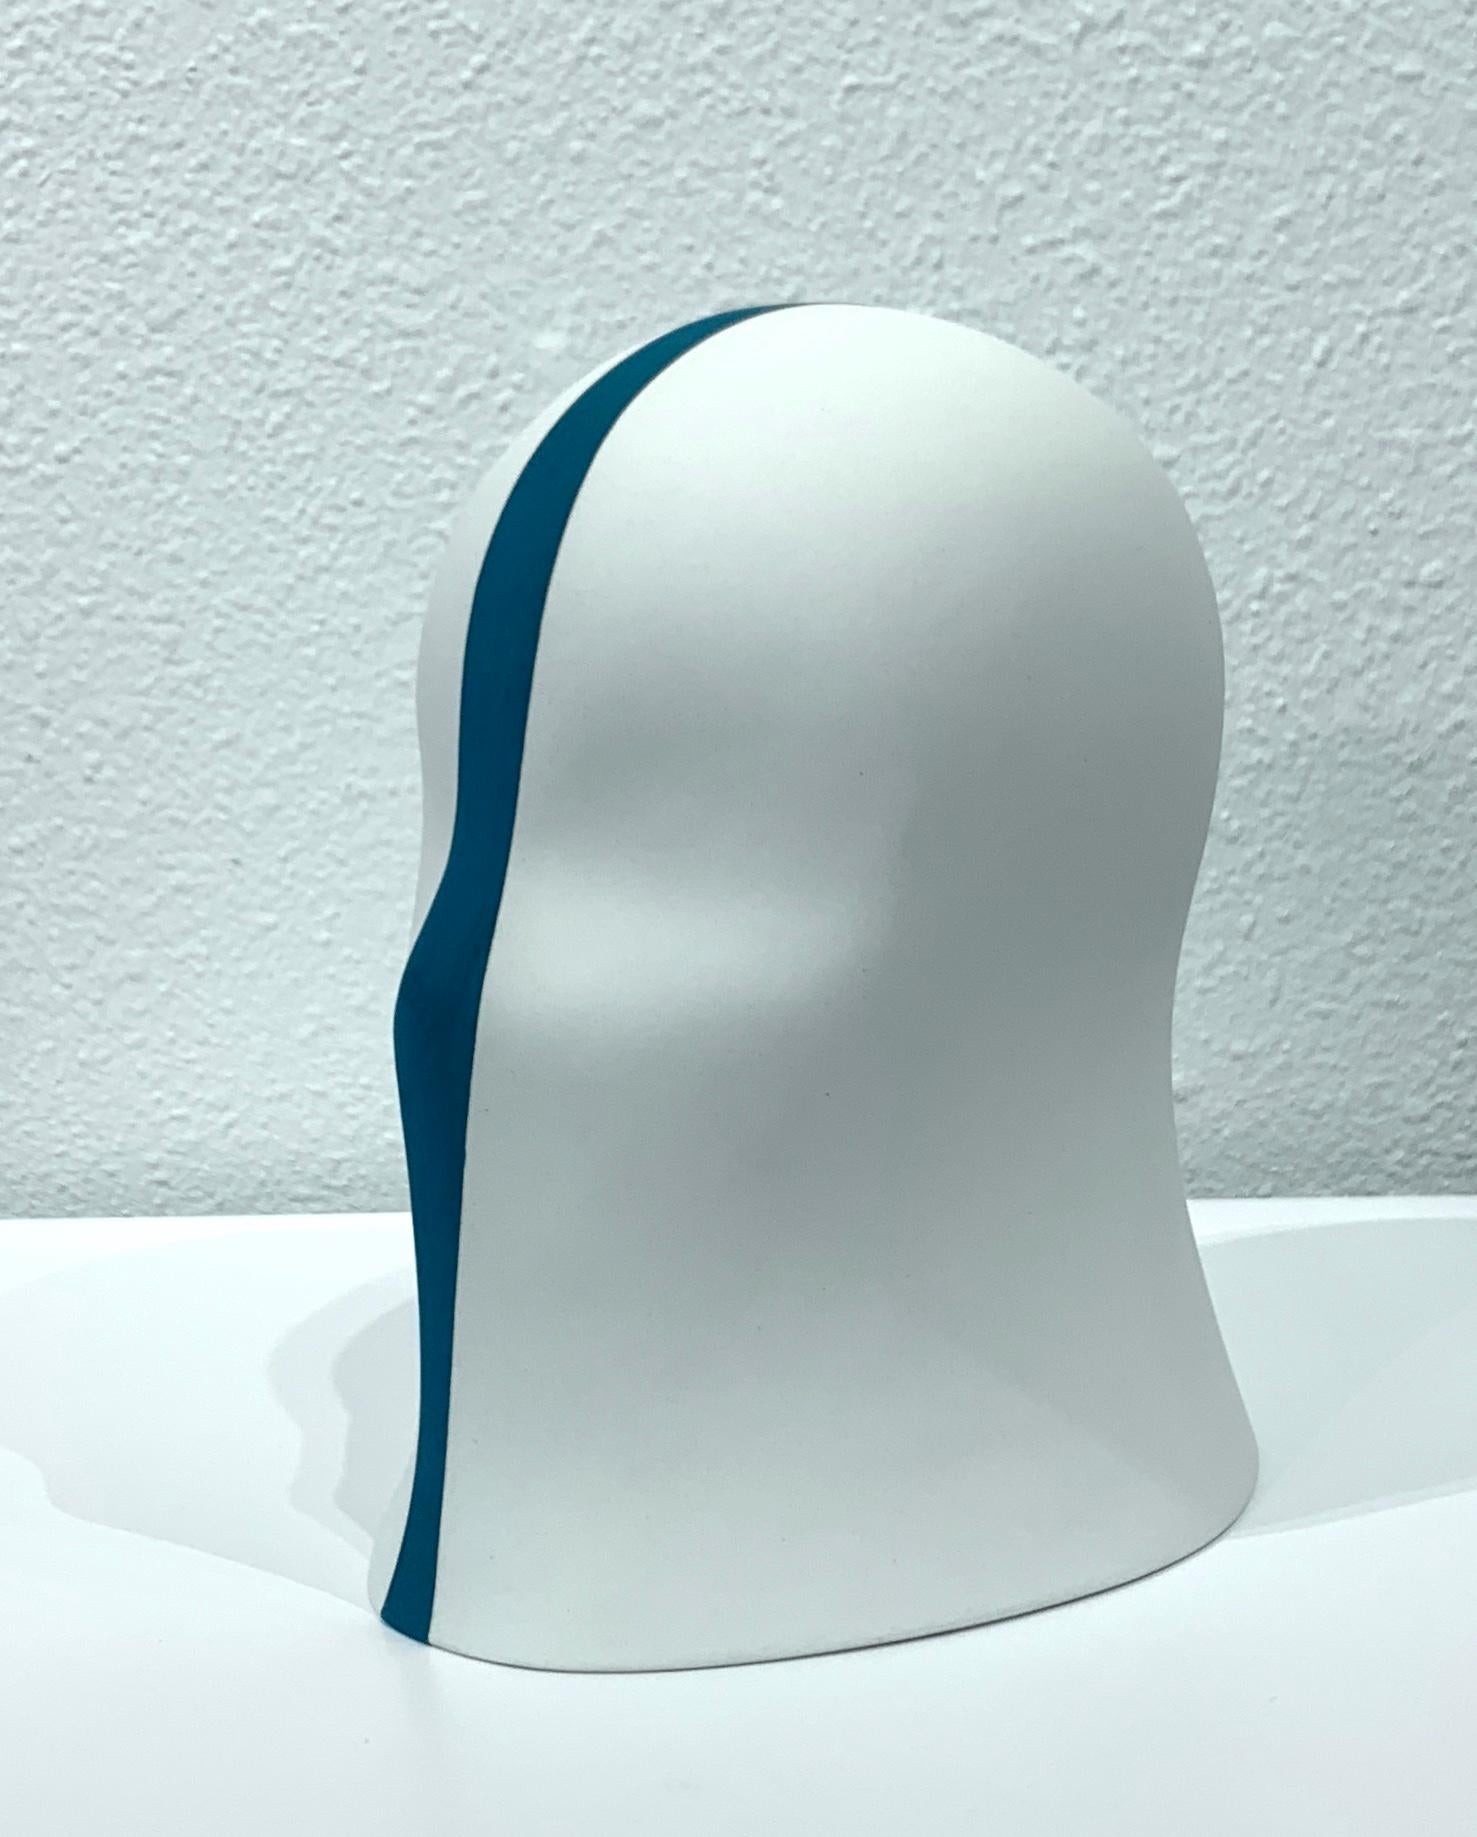 Teal Division Veil, Chloe Rizzo Sculpture Porcelain Female Head White 1